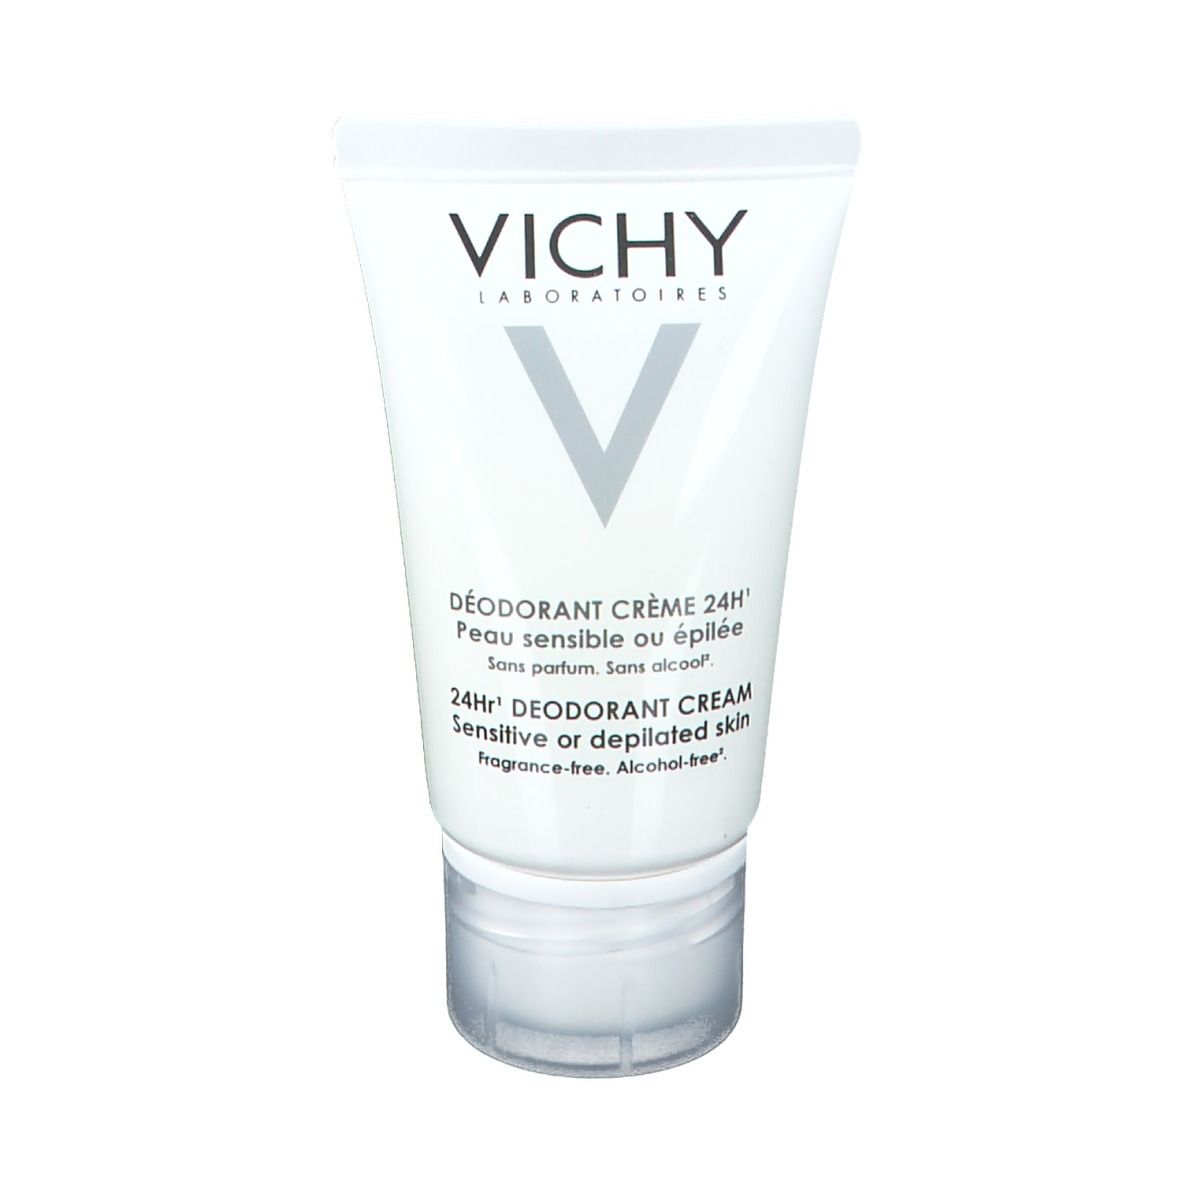 Vichy Deodorante Crema Antiarrossamento